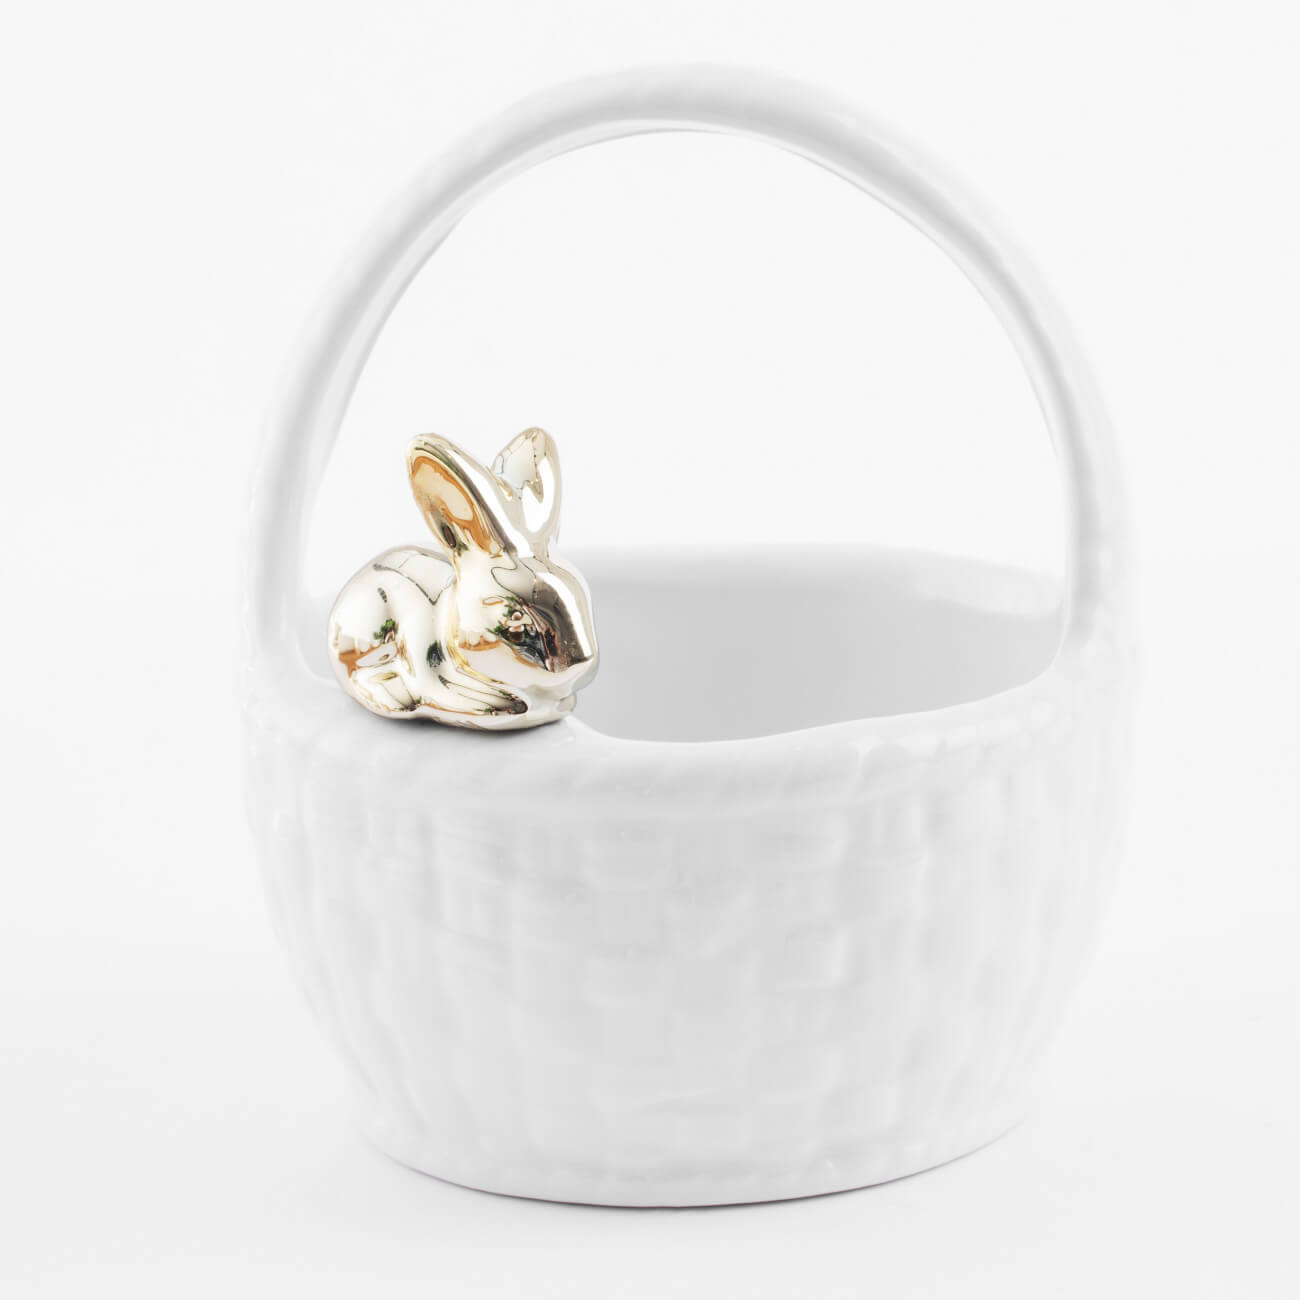 Конфетница, 12х14 см, с ручкой, керамика, белая, Кролик на корзине, Easter gold - фото 1